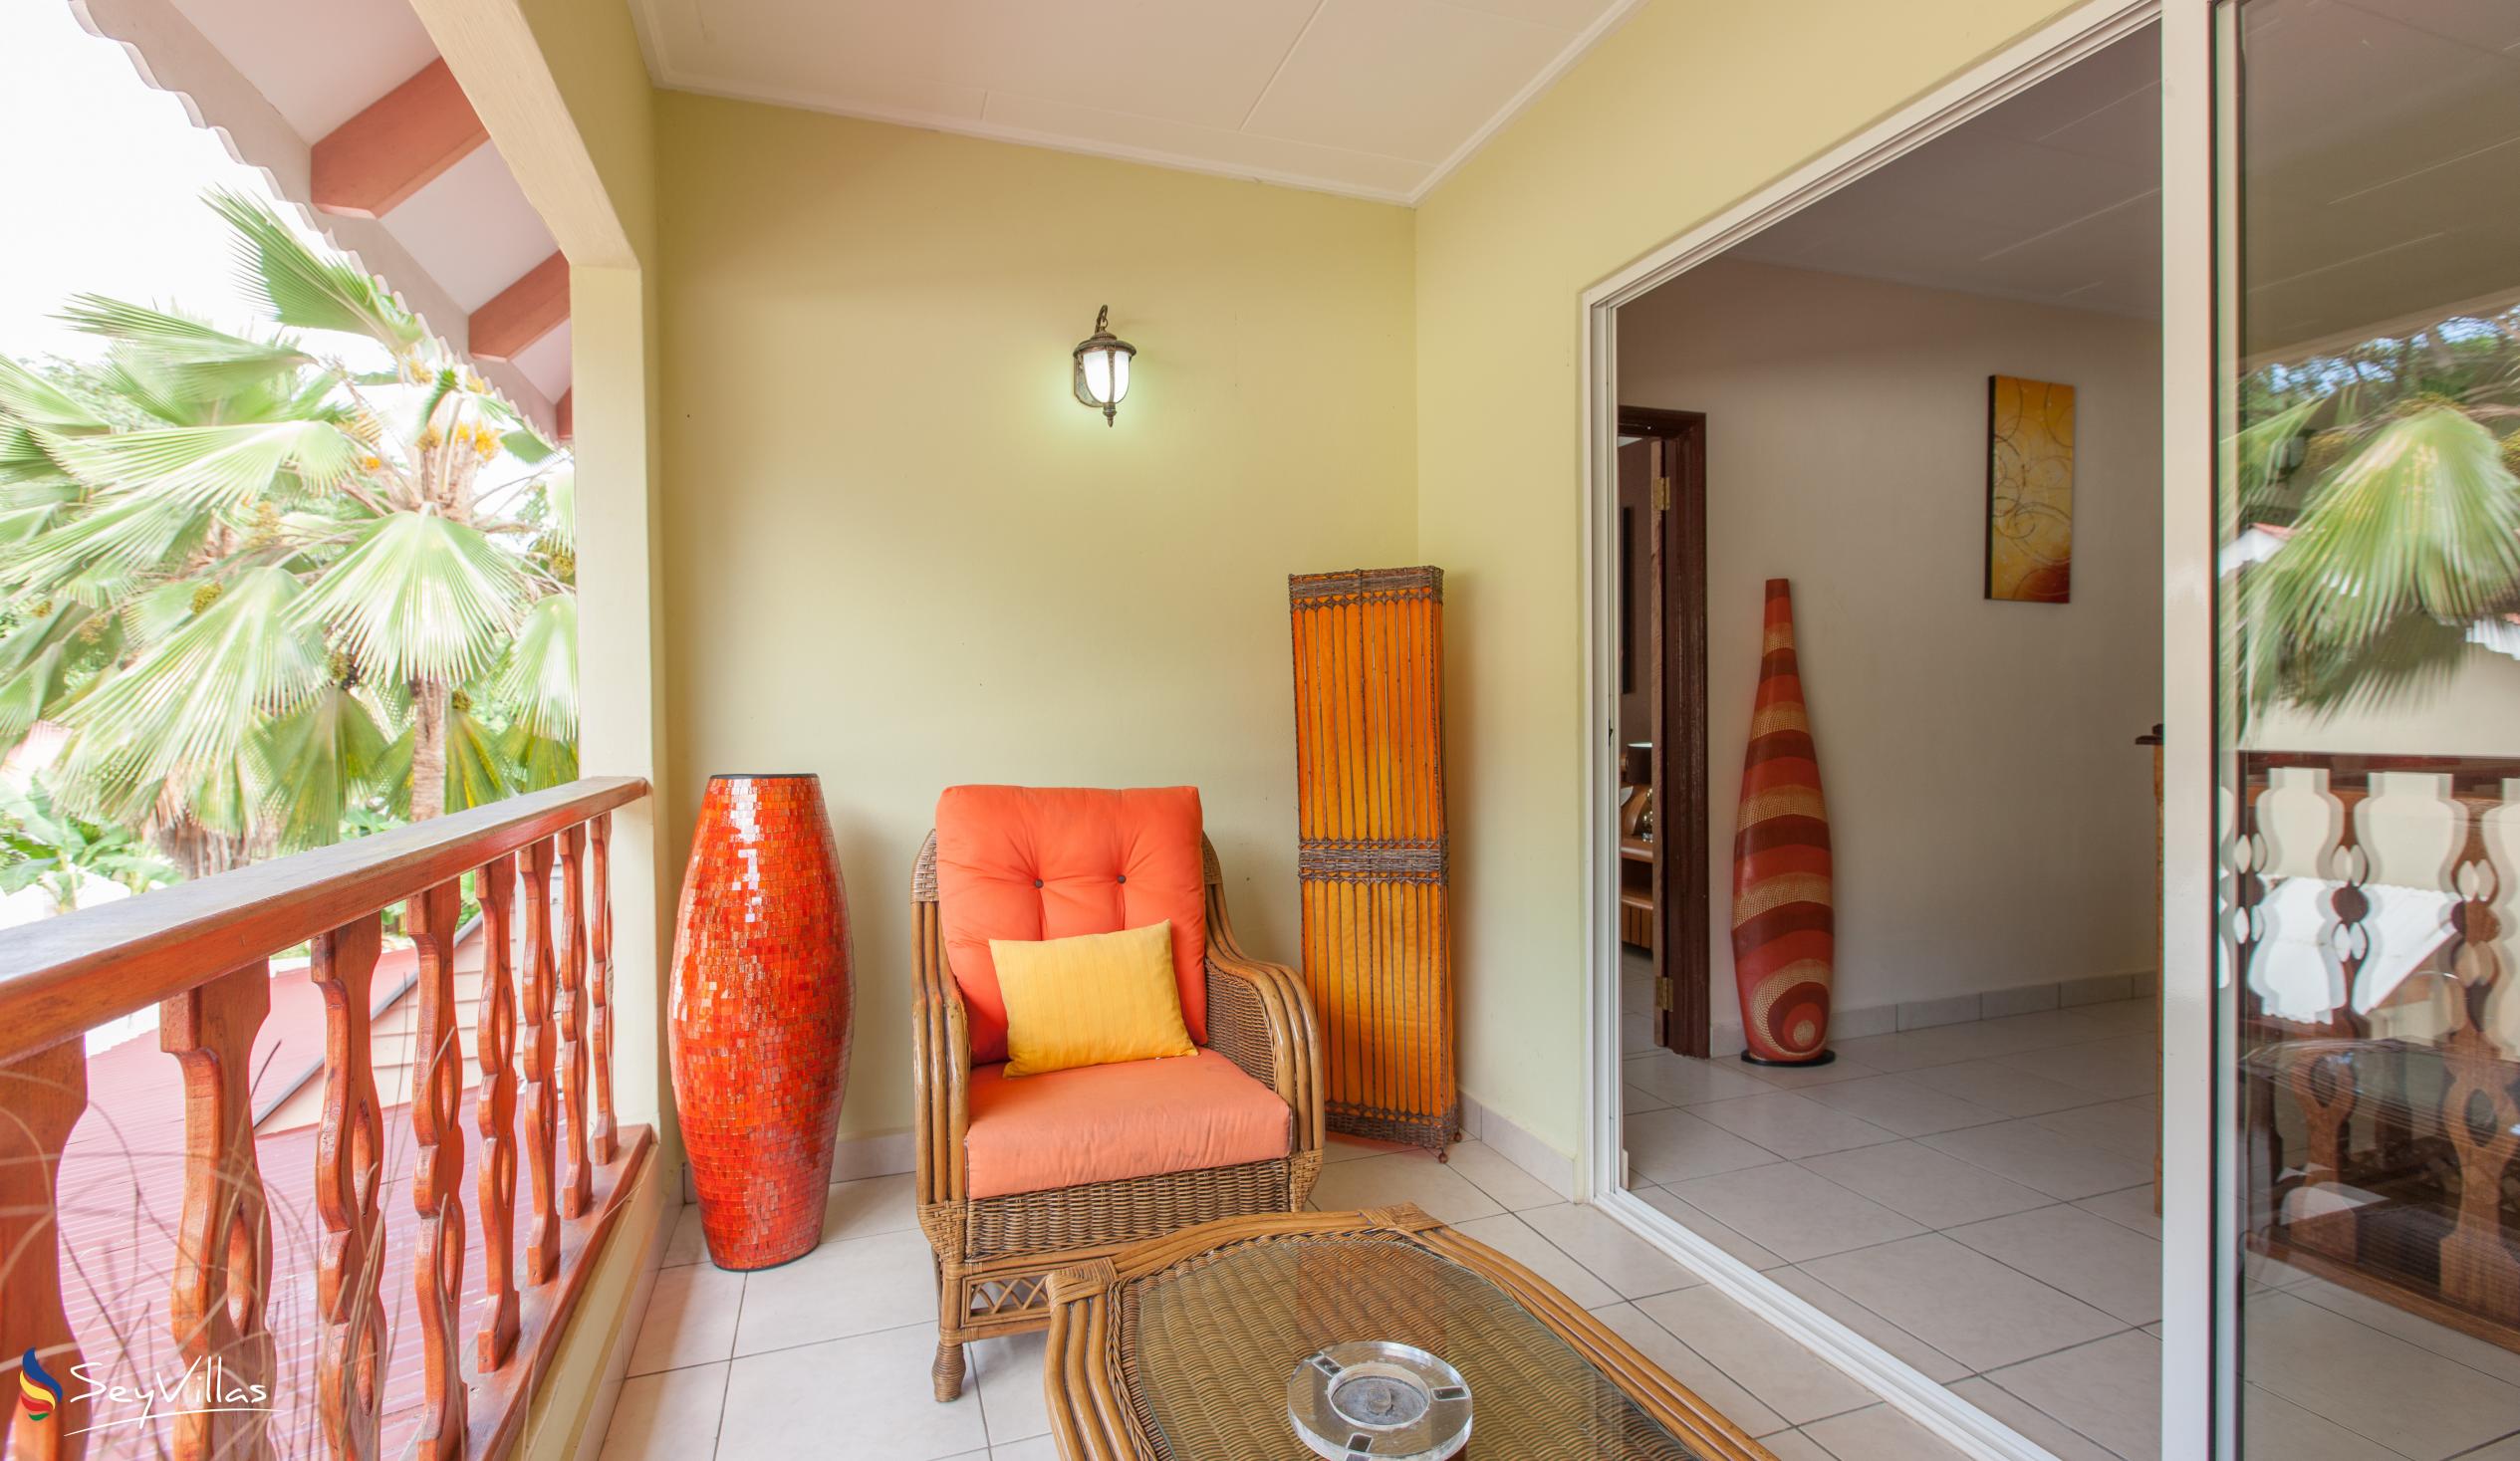 Foto 25: Villa Authentique - Camera Standard - La Digue (Seychelles)